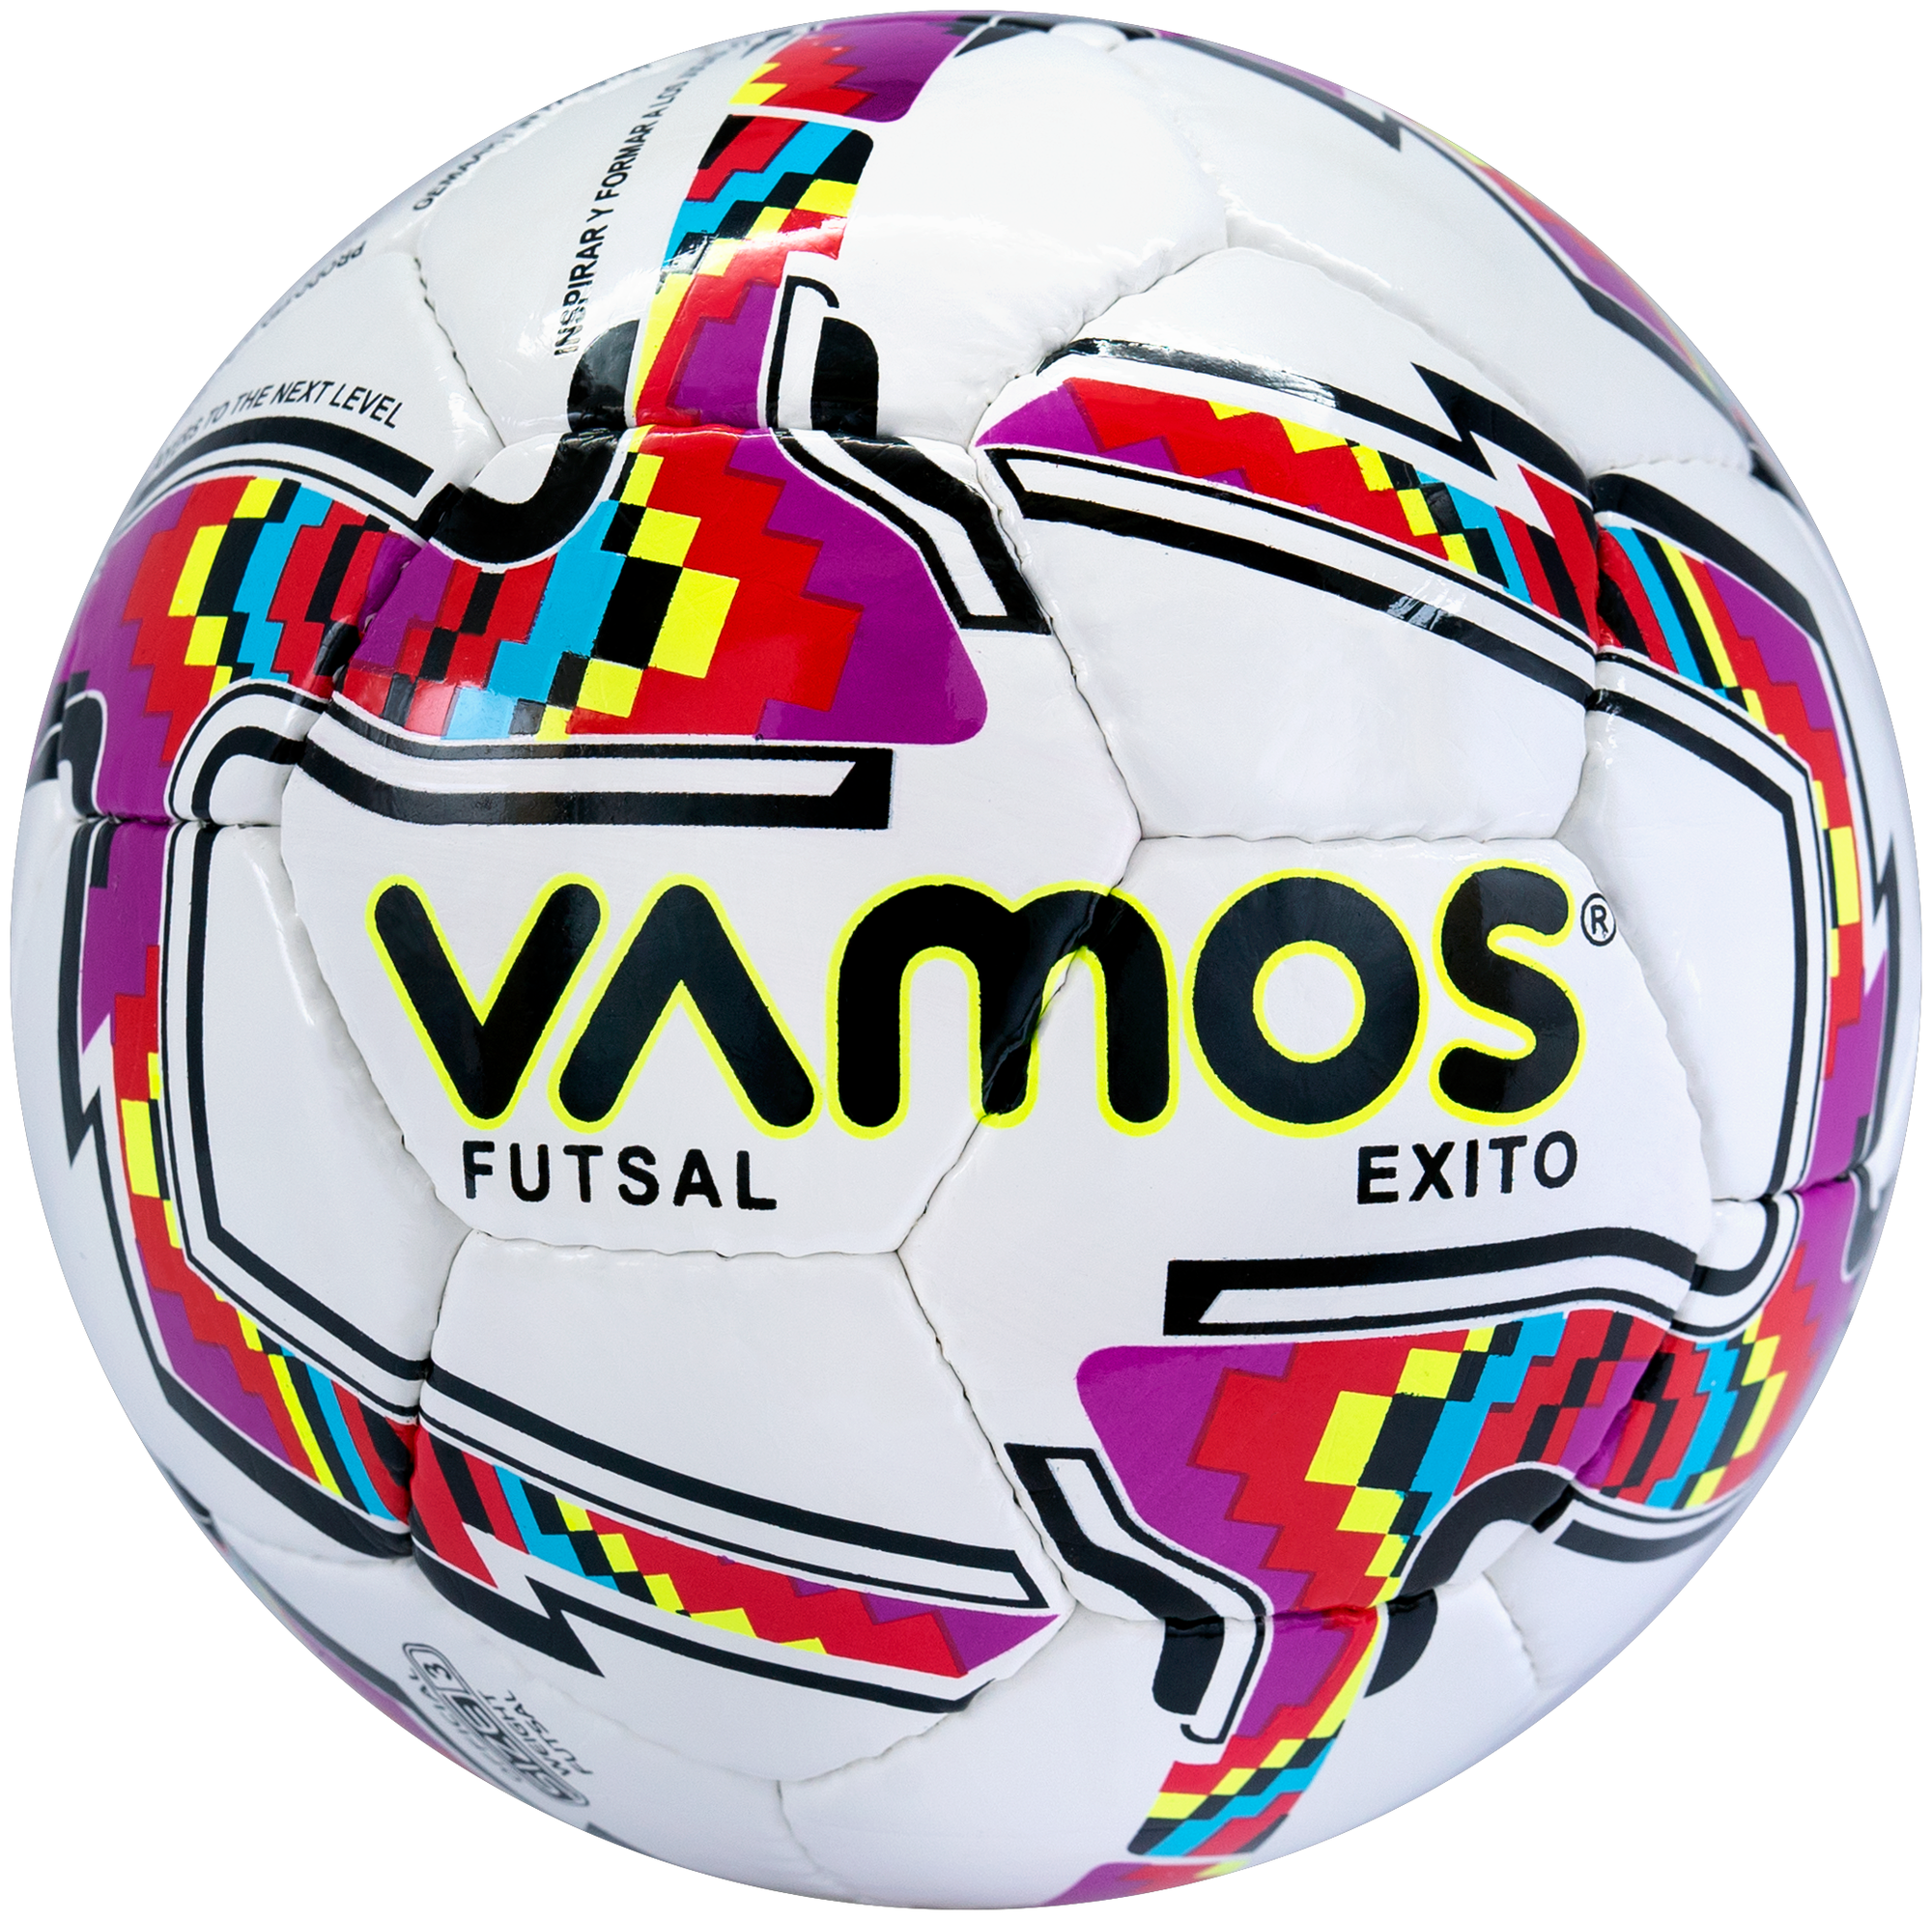 Футбольный мяч для футзала 3 размер EXITO FUTSAL